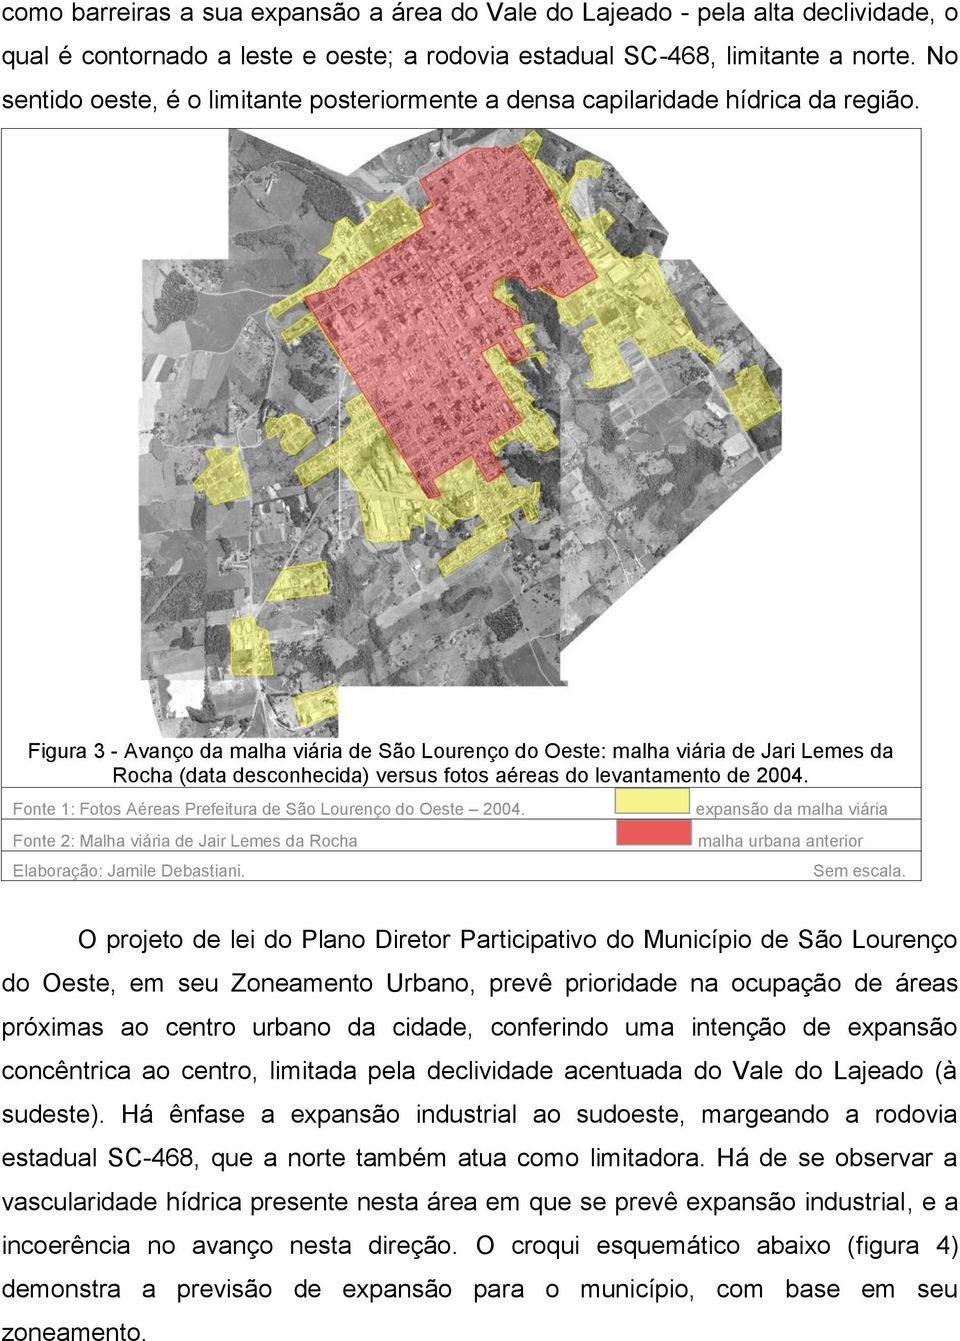 Figura 3 - Avanço da malha viária de São Lourenço do Oeste: malha viária de Jari Lemes da Rocha (data desconhecida) versus fotos aéreas do levantamento de 2004.